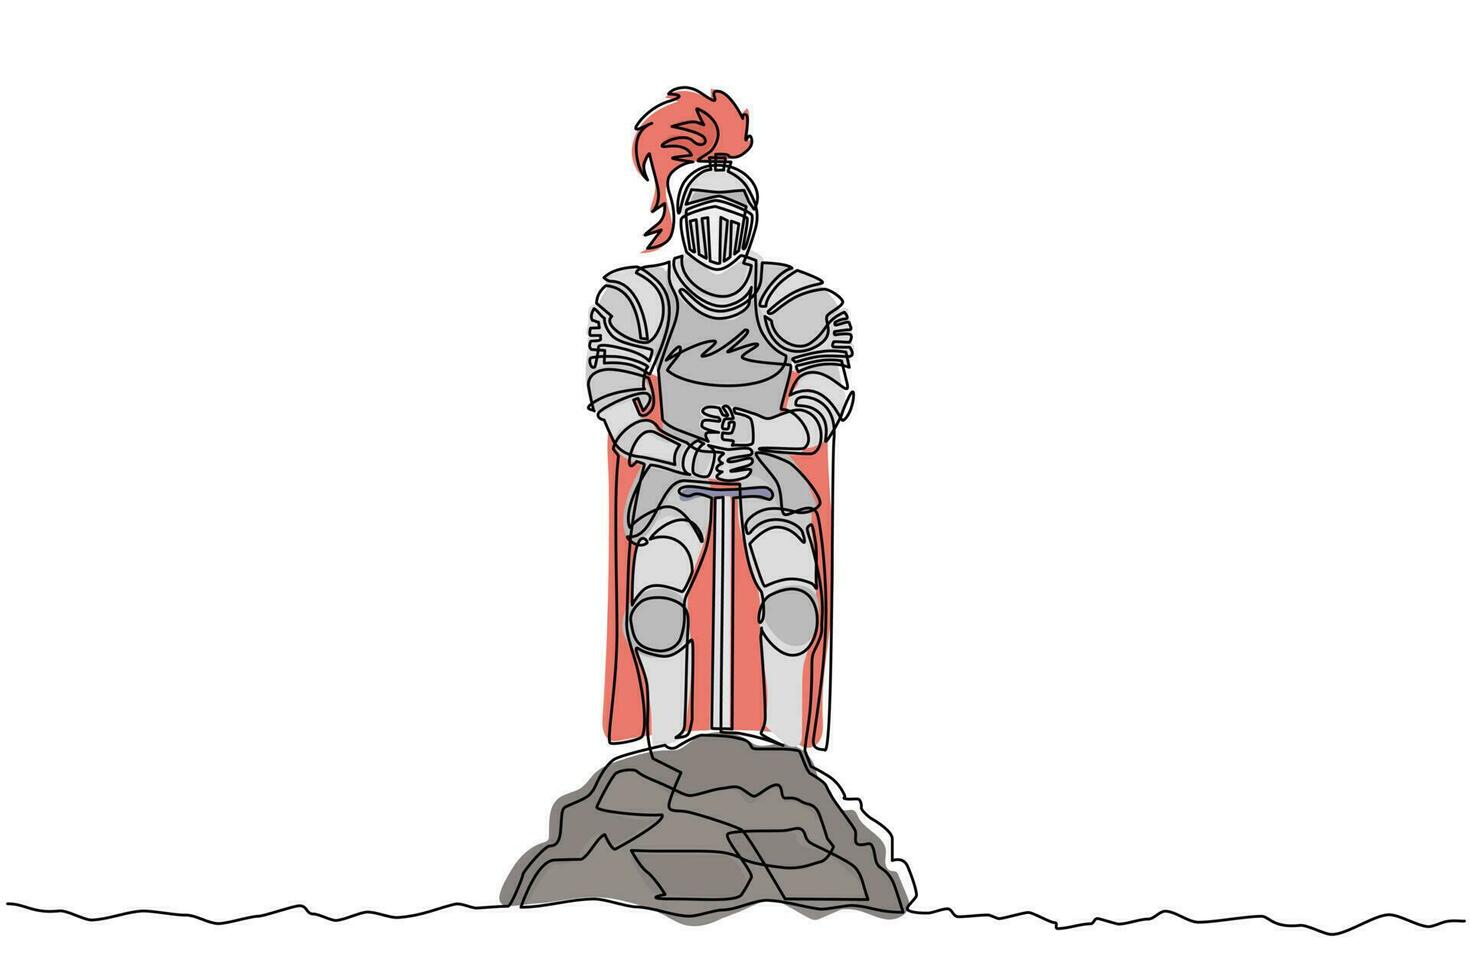 cavaliere medievale in armatura, mantello, elmo con piuma. guerriero del medioevo in piedi e ritirato excalibur della pietra. vettore grafico moderno di disegno di linea continua